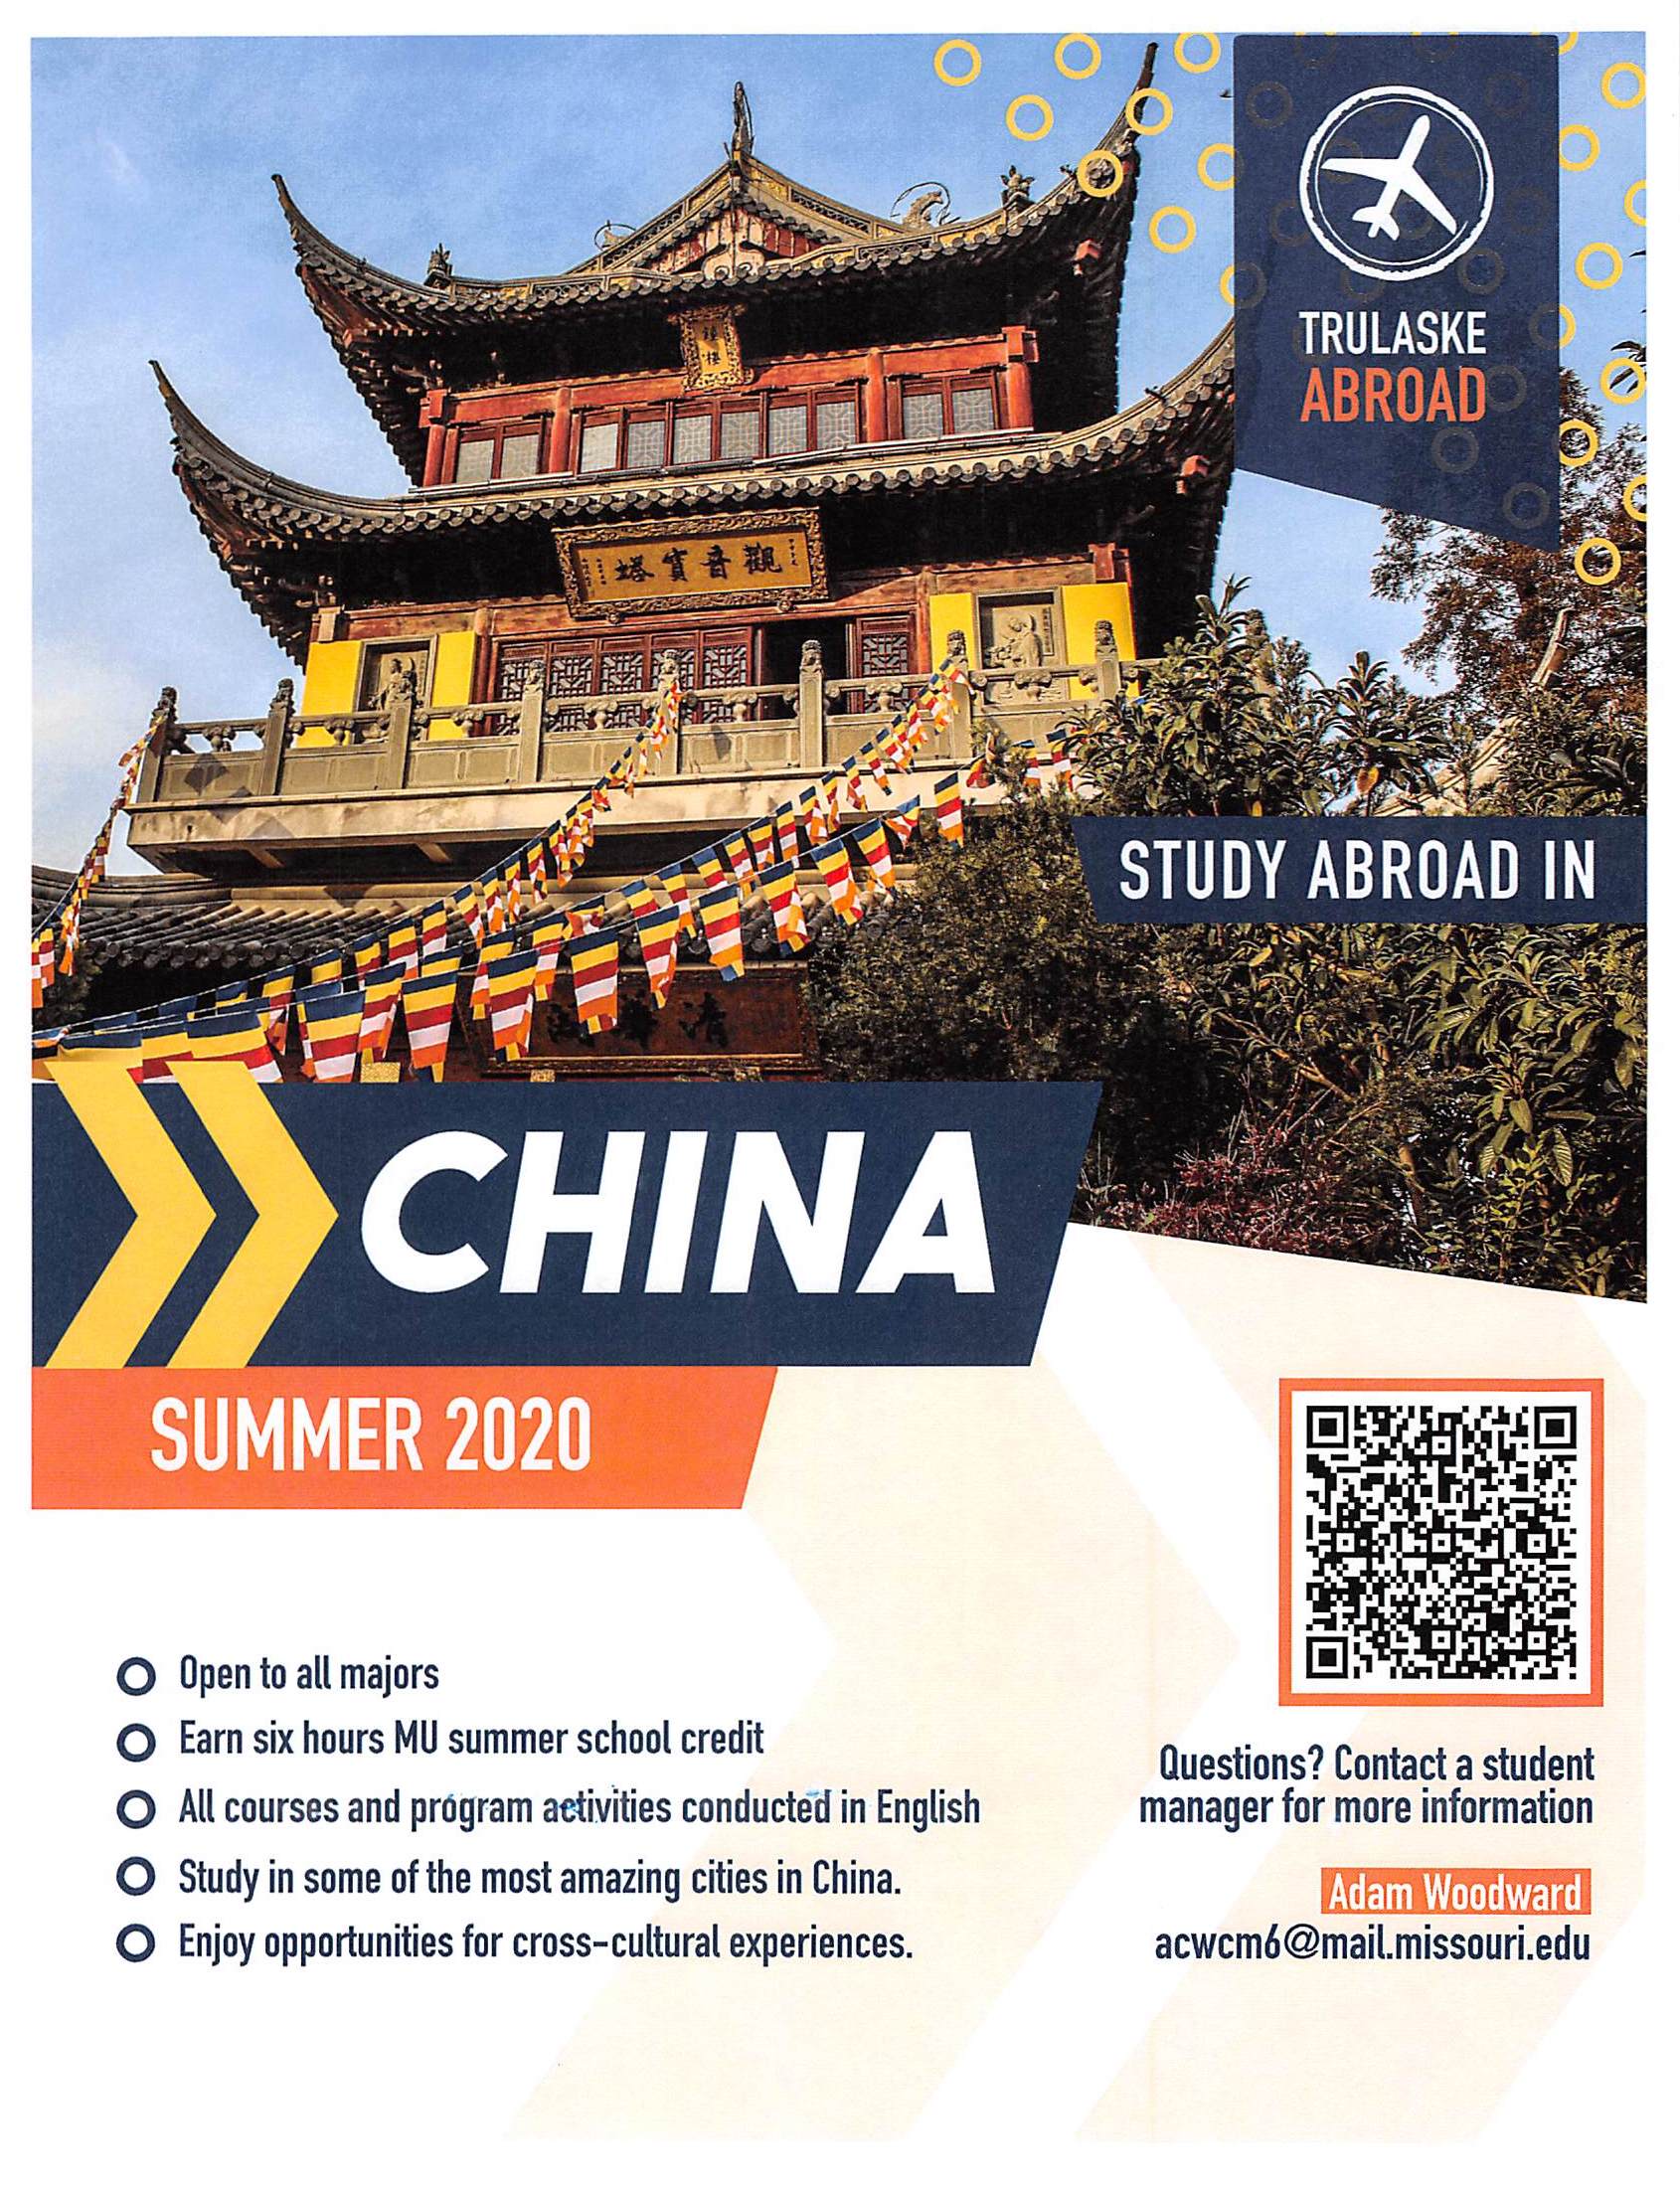 China study abroad flyer